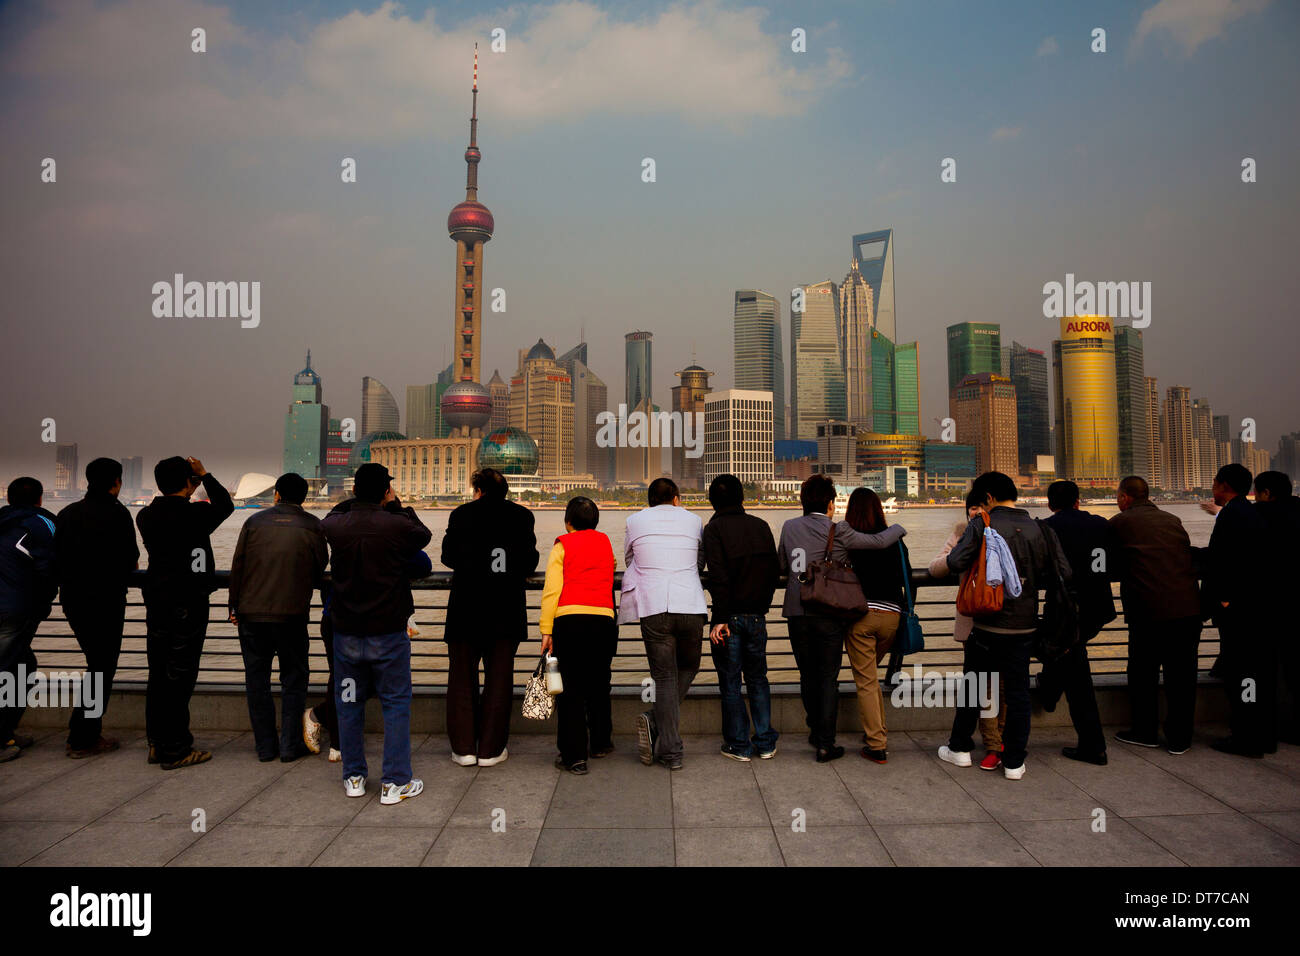 La gente lo skyline di Pudong Oriental Pearl Tower il World Financial Center di Shanghai Torre Jin Mao visto da sopra il fiume Huangpu Foto Stock